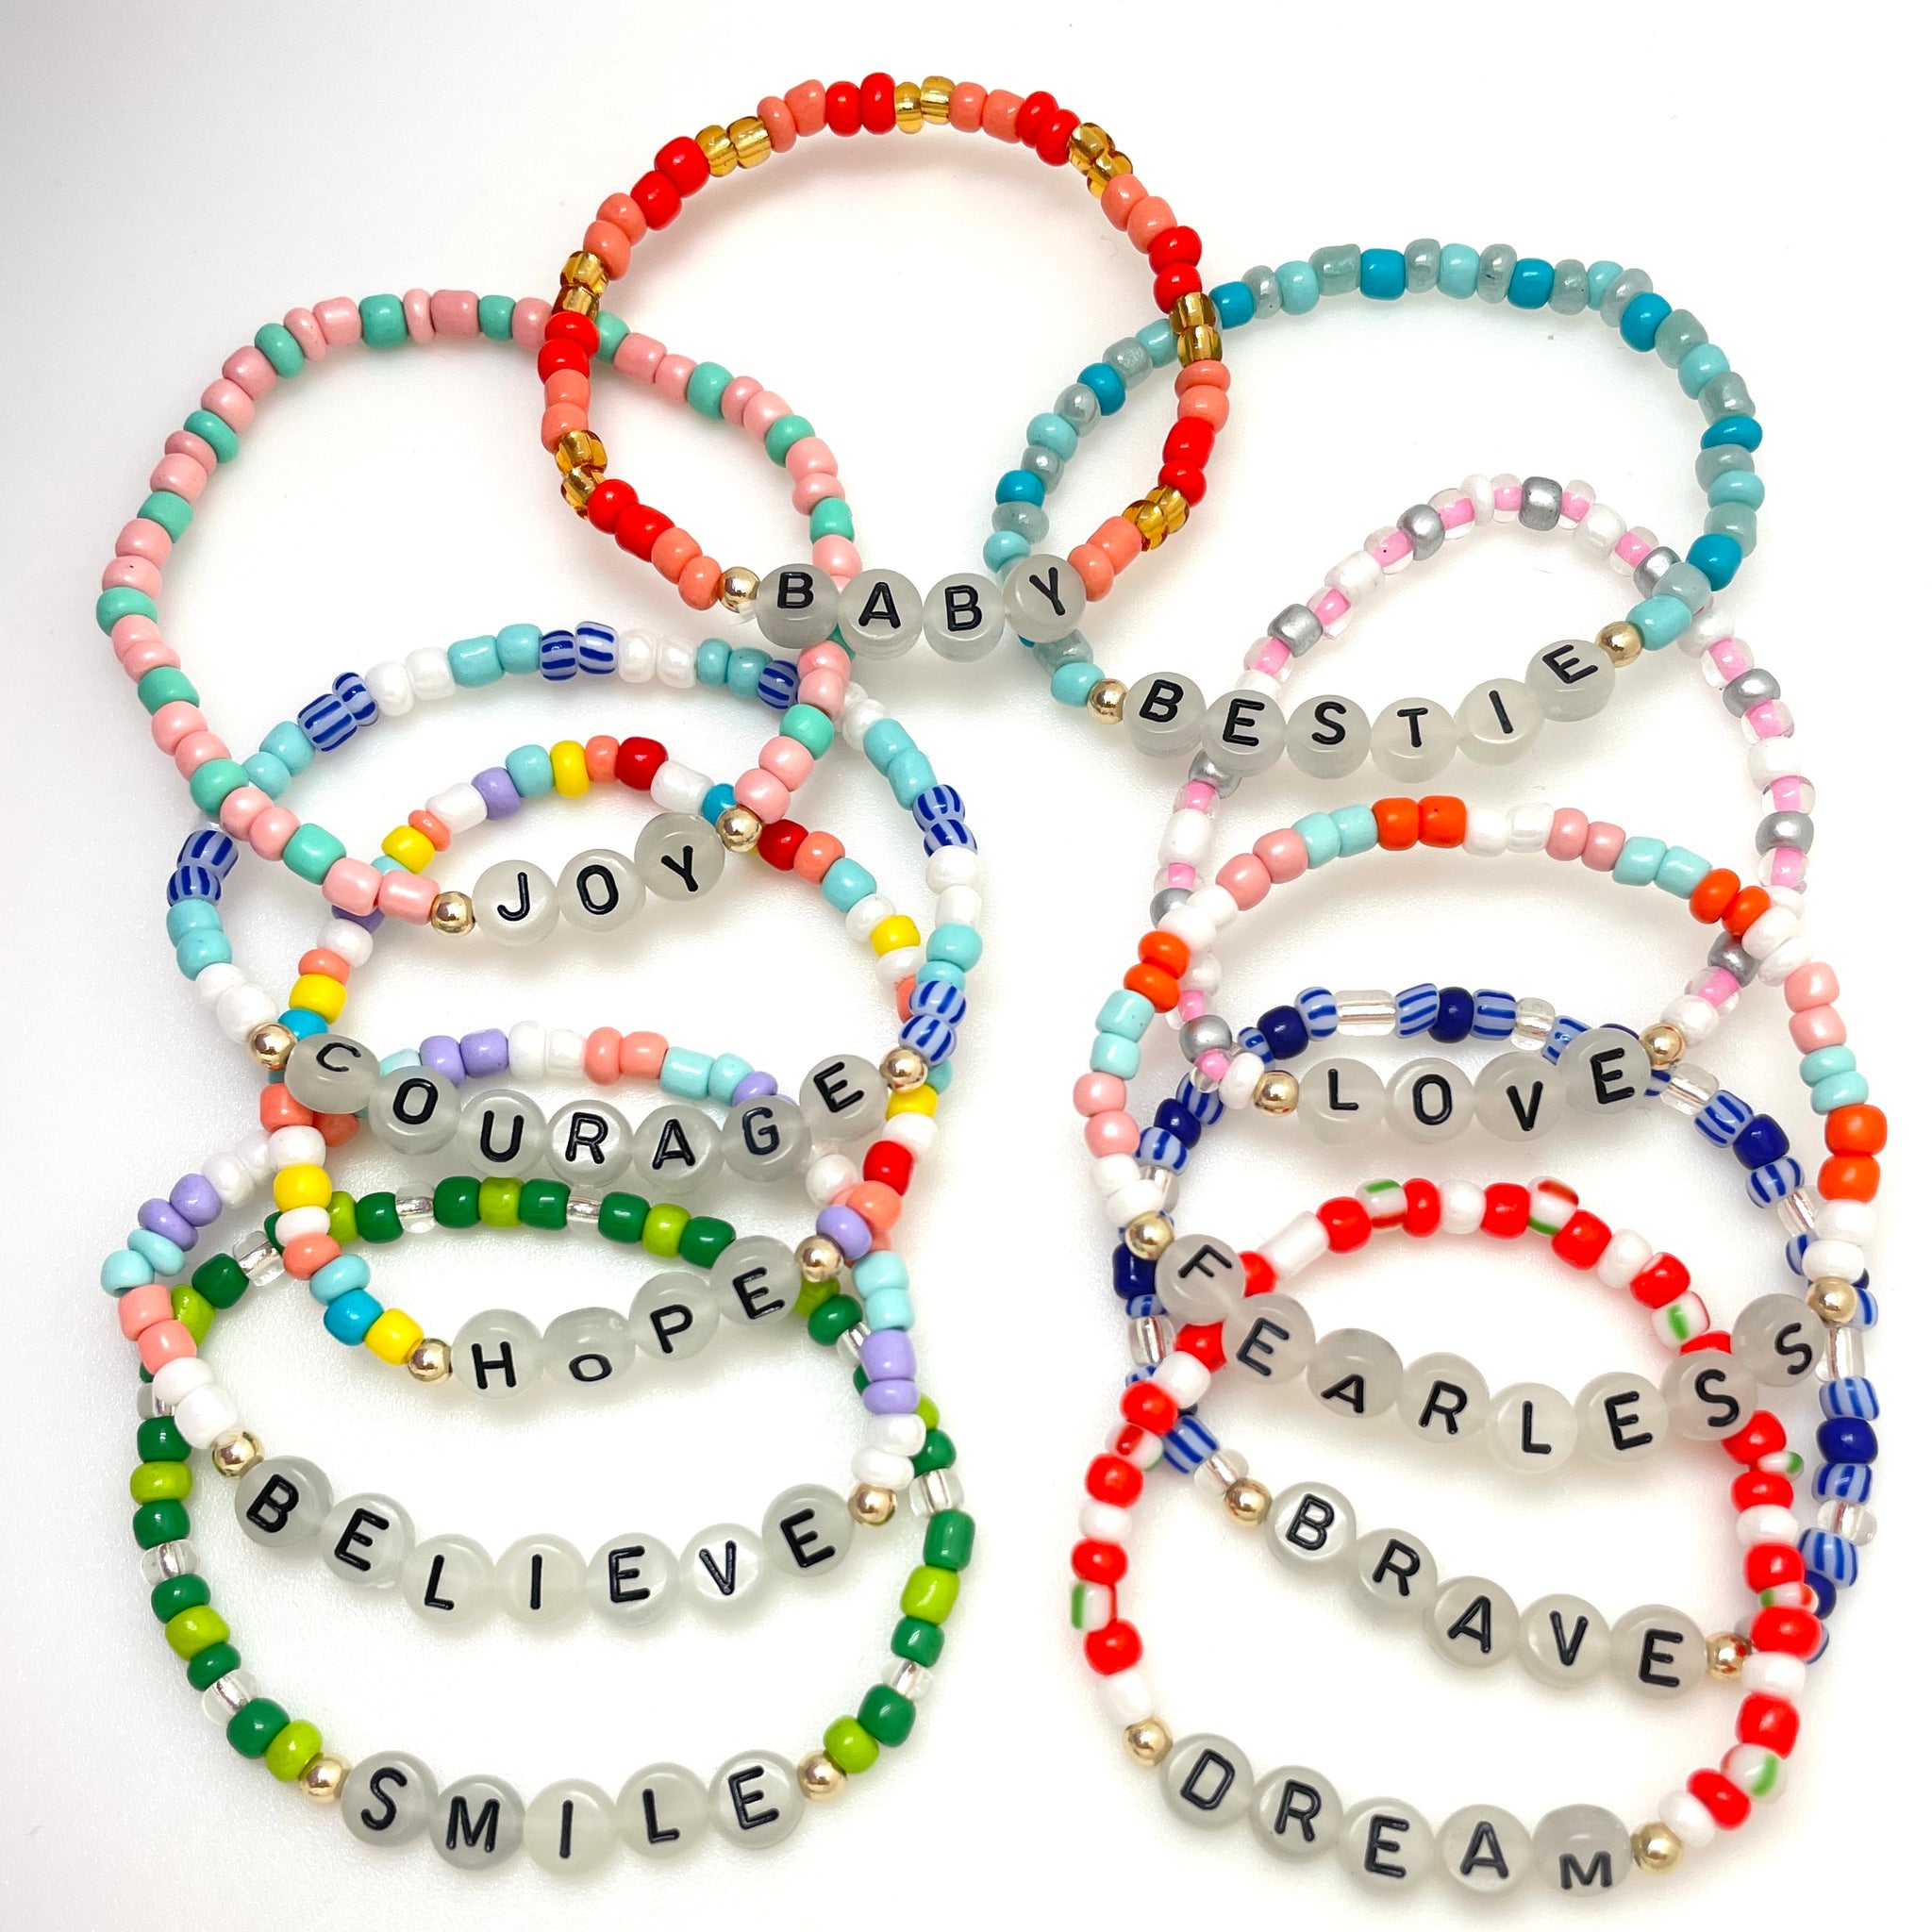 Colorful Beaded Friendship Bracelet, Beaded Bracelet, Bracelet for Friend, Gift for Friend, Custom Party Favor